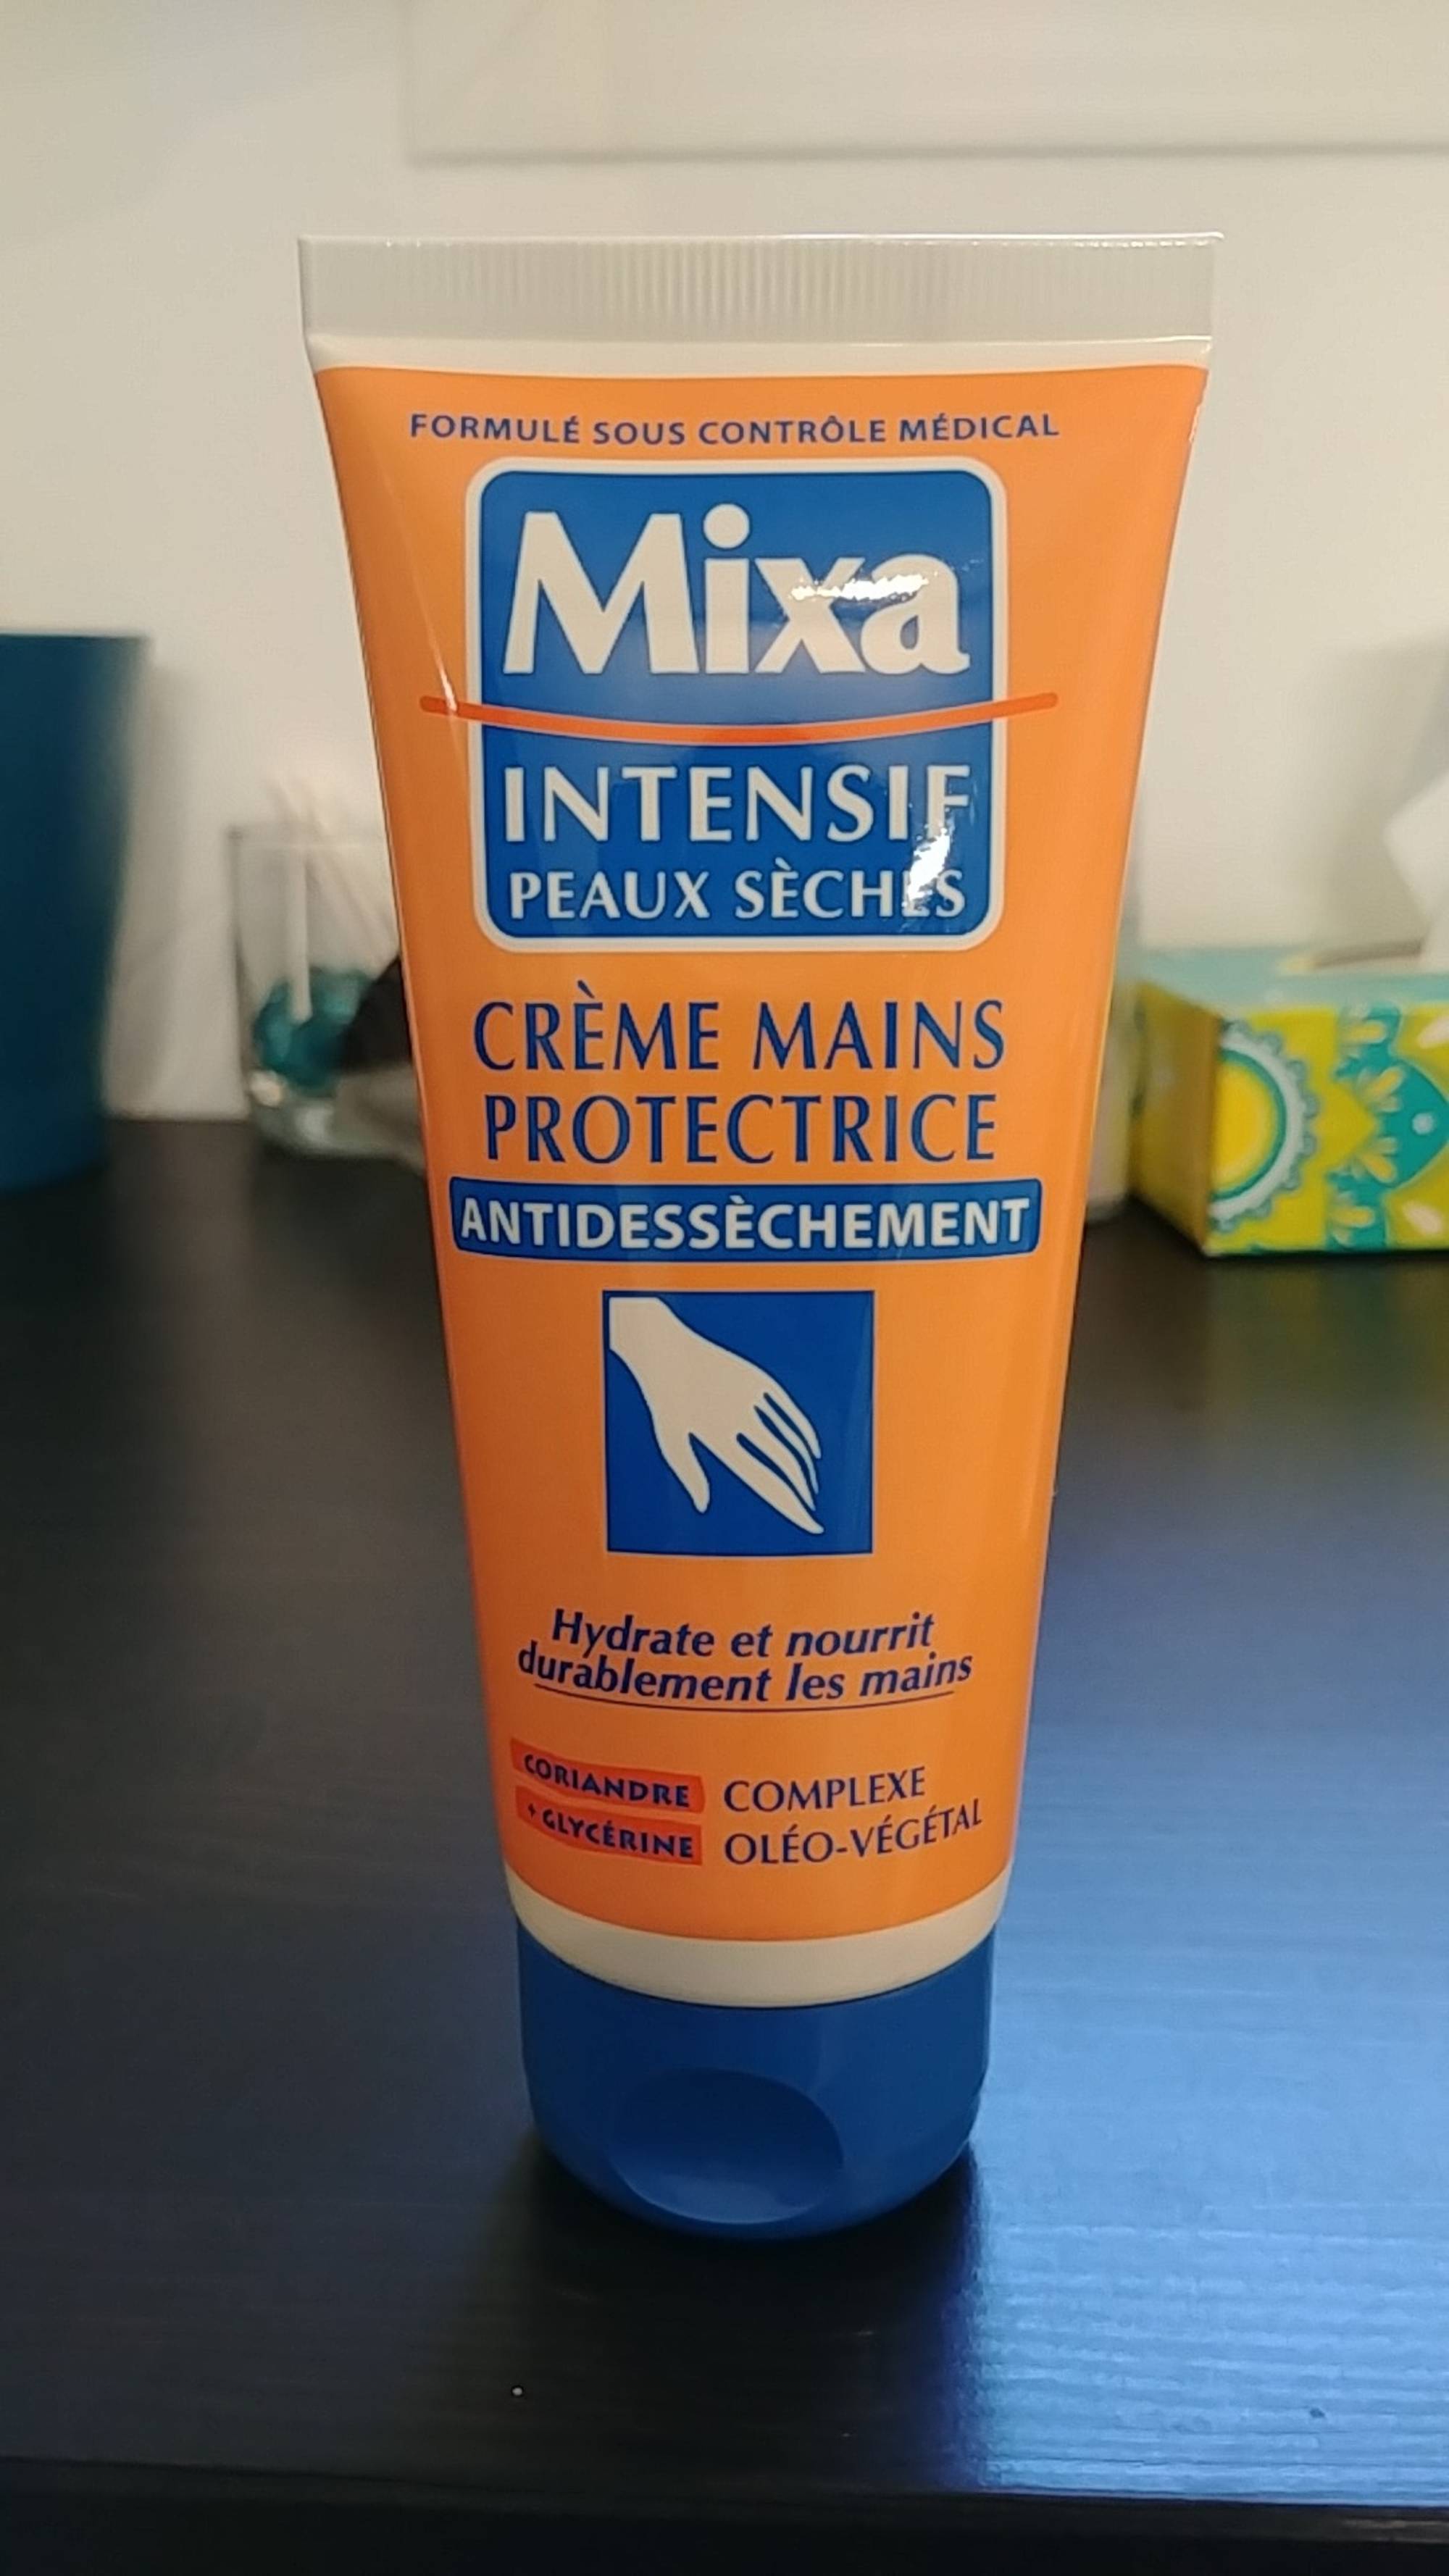 MIXA - Intensif peaux sèches - Crème mains protectrice antidessèchement 